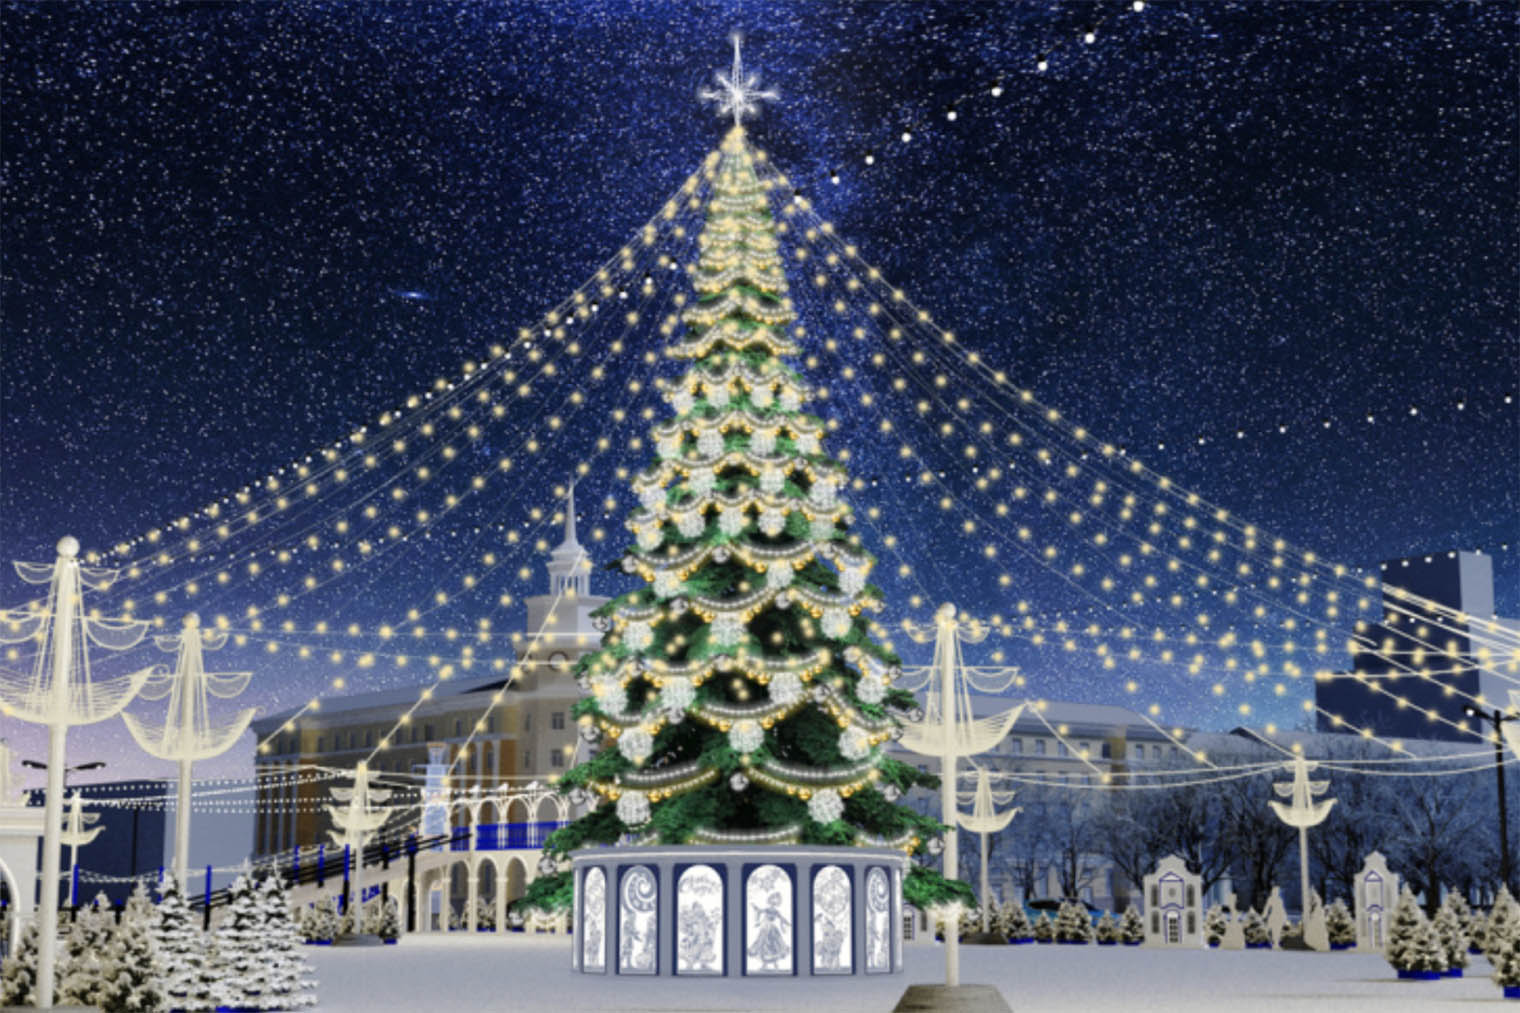 Вместо императорского вензеля, который украшал верхушку елки в прошлом году, повесят звезду. Источник: zakupki.gov.ru